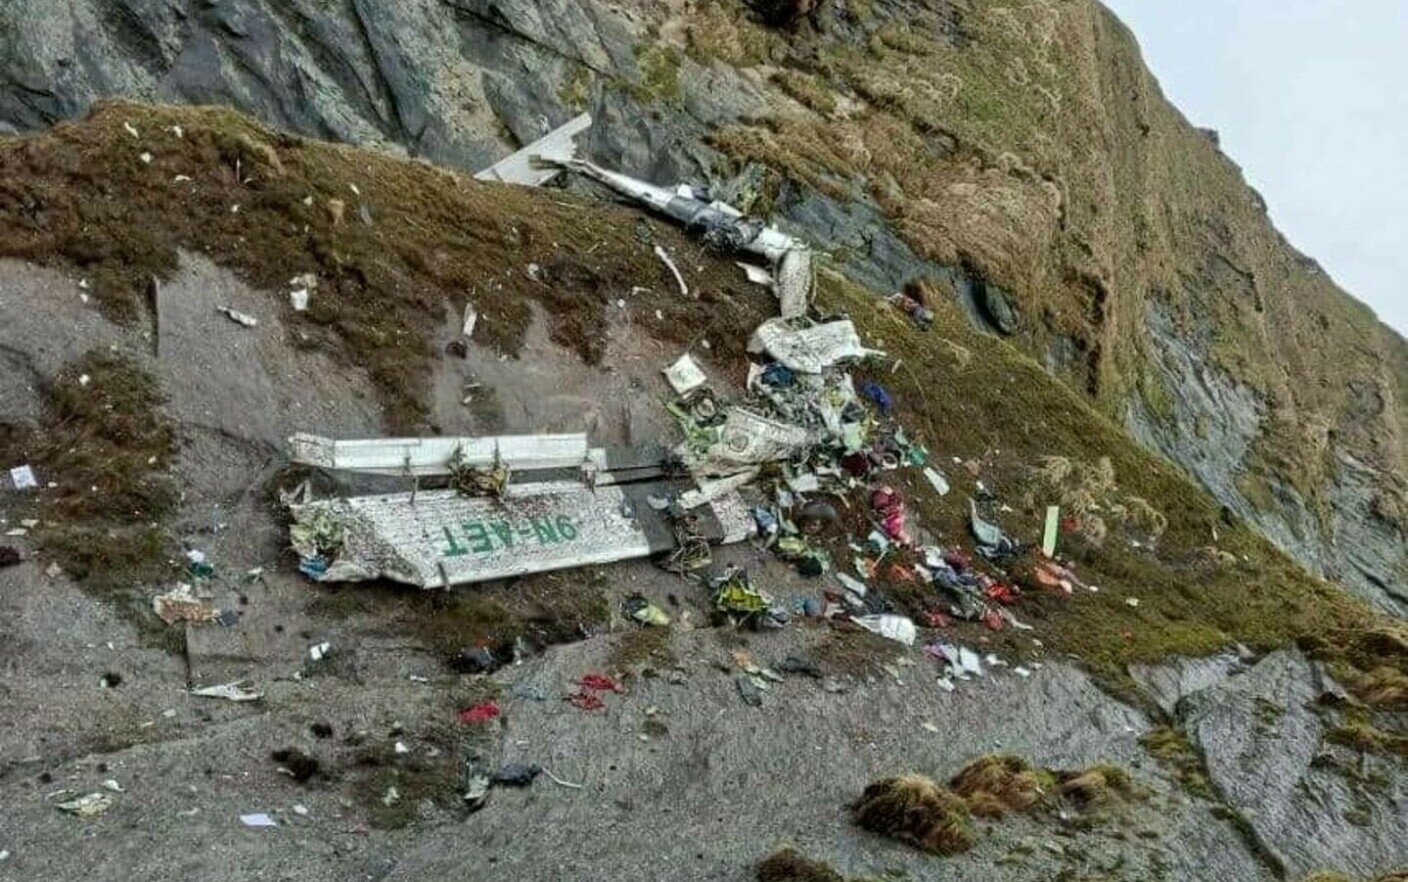  A fost găsită epava avionului dispărut în Nepal. Echipele de intervenţie au recuperat 14 cadavre